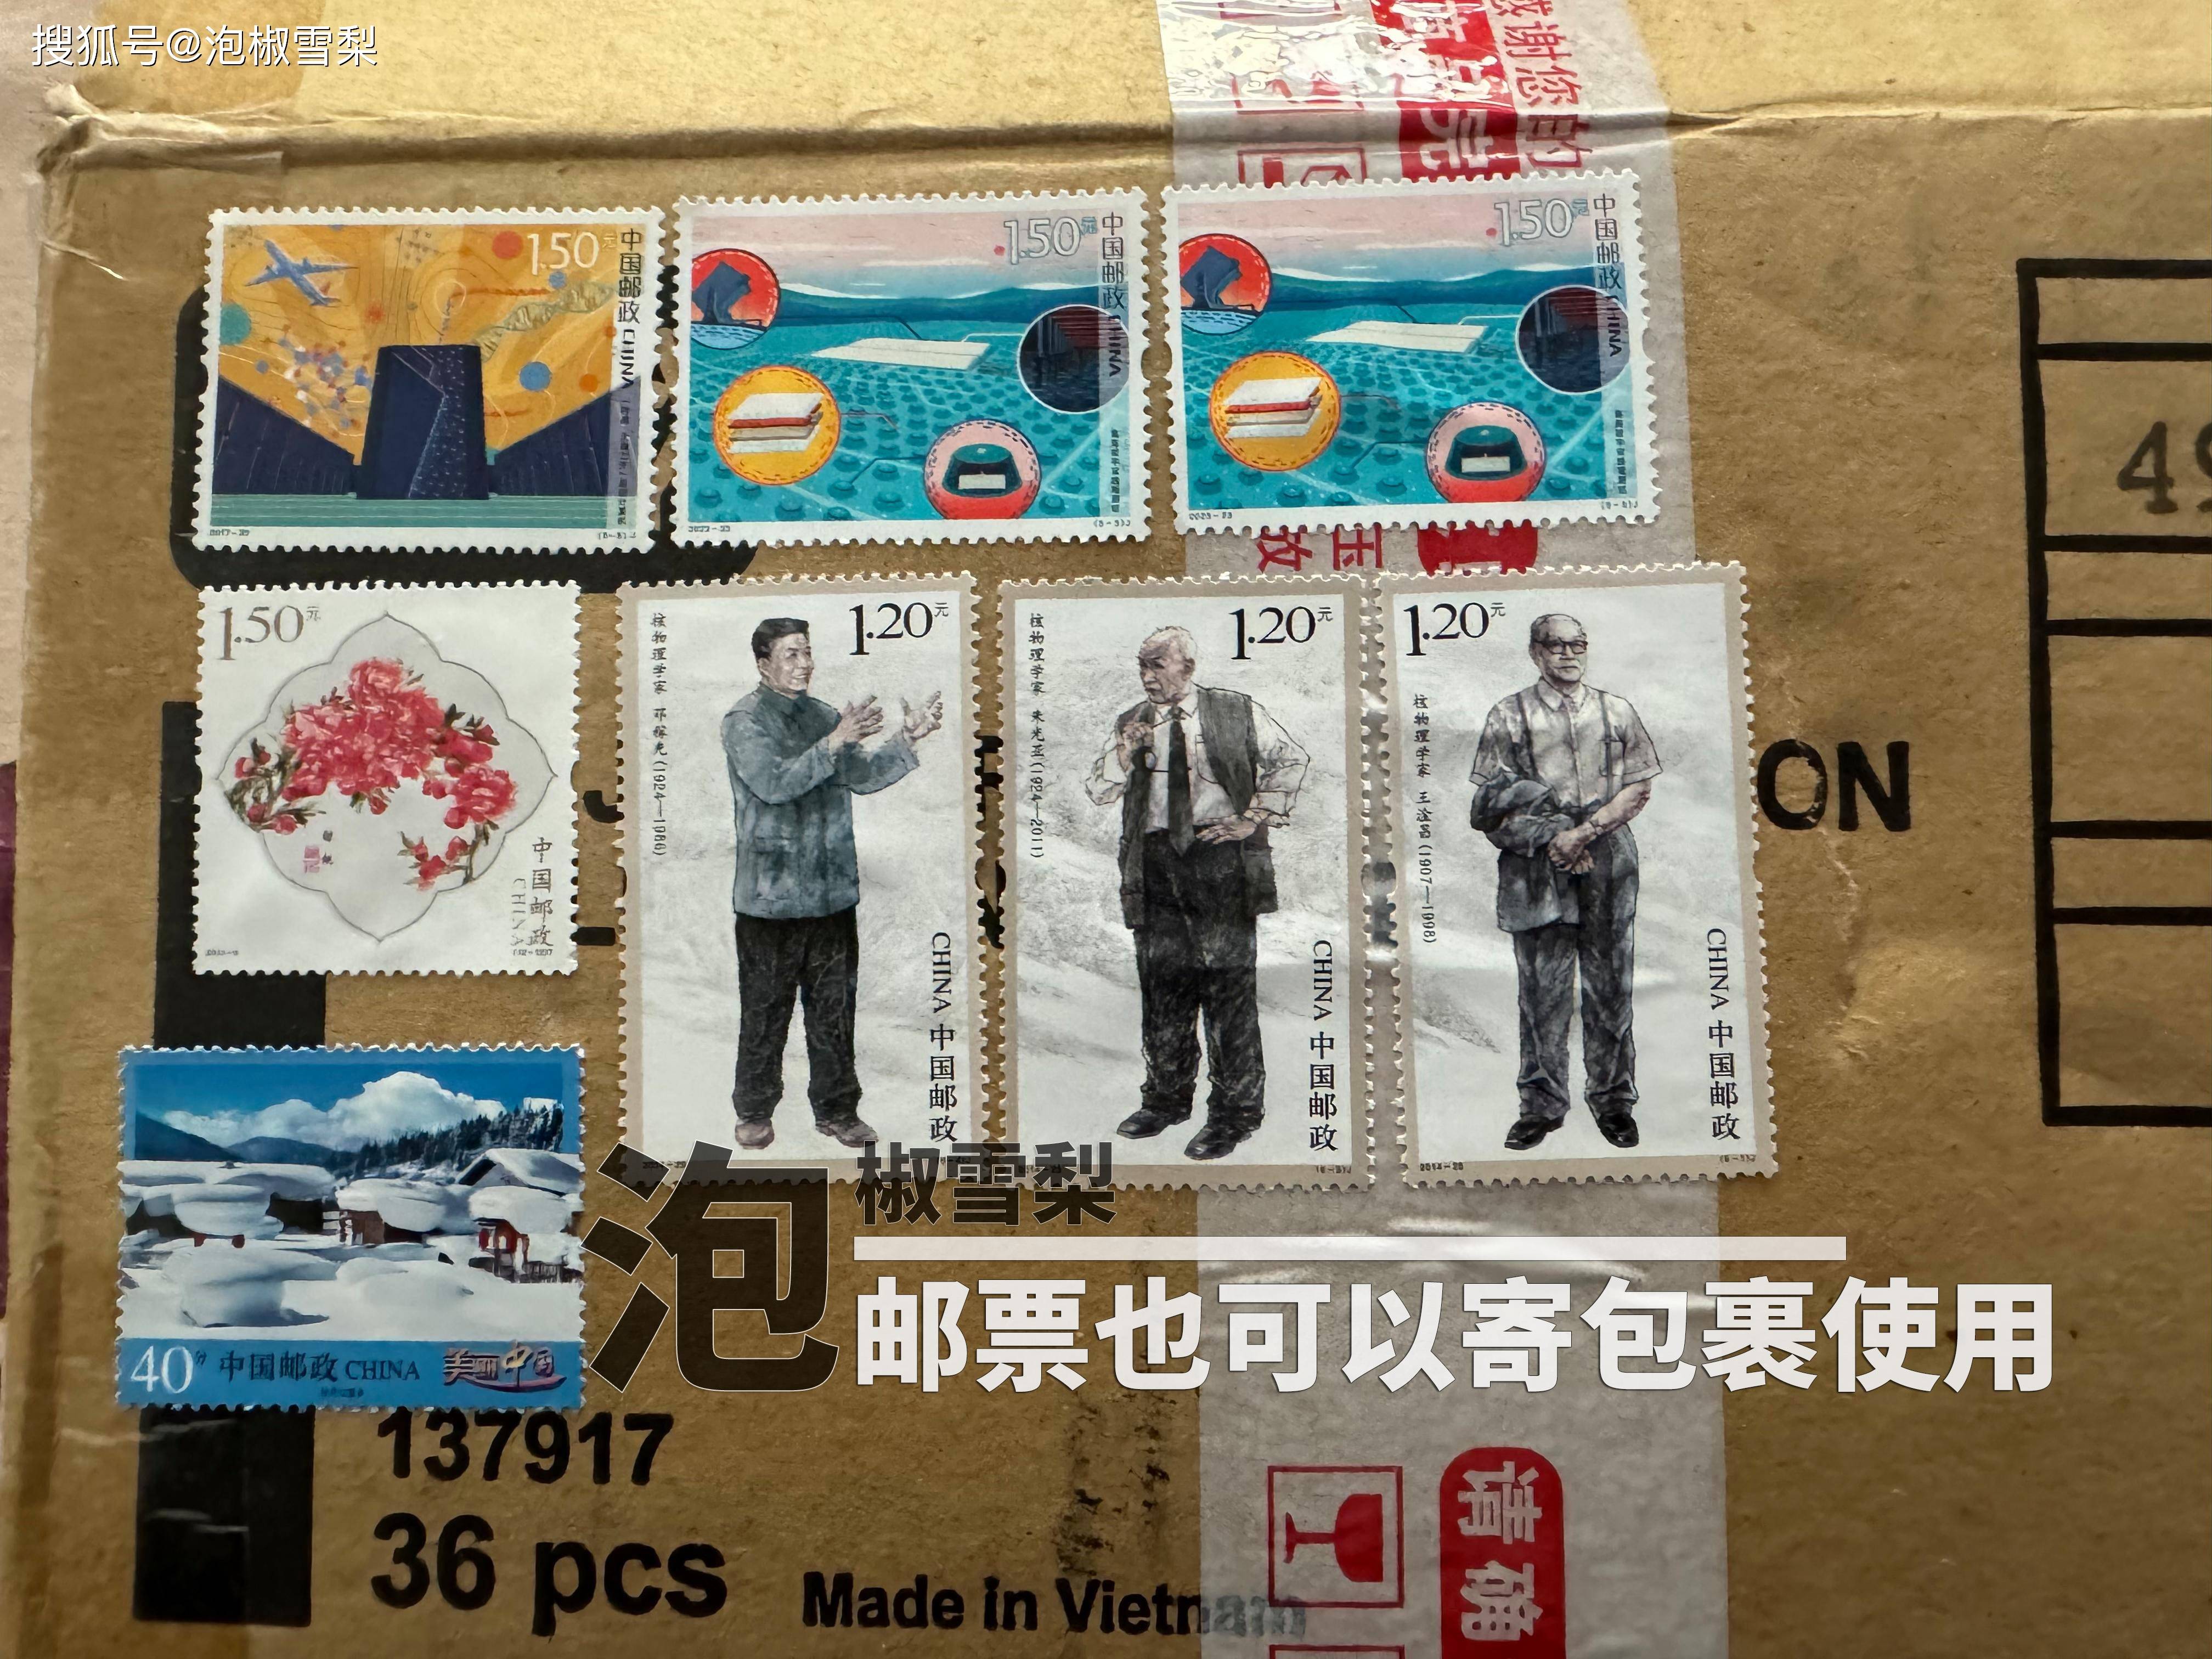 假邮票如此泛滥,邮政为何视而不见?因为损失有集邮者承担